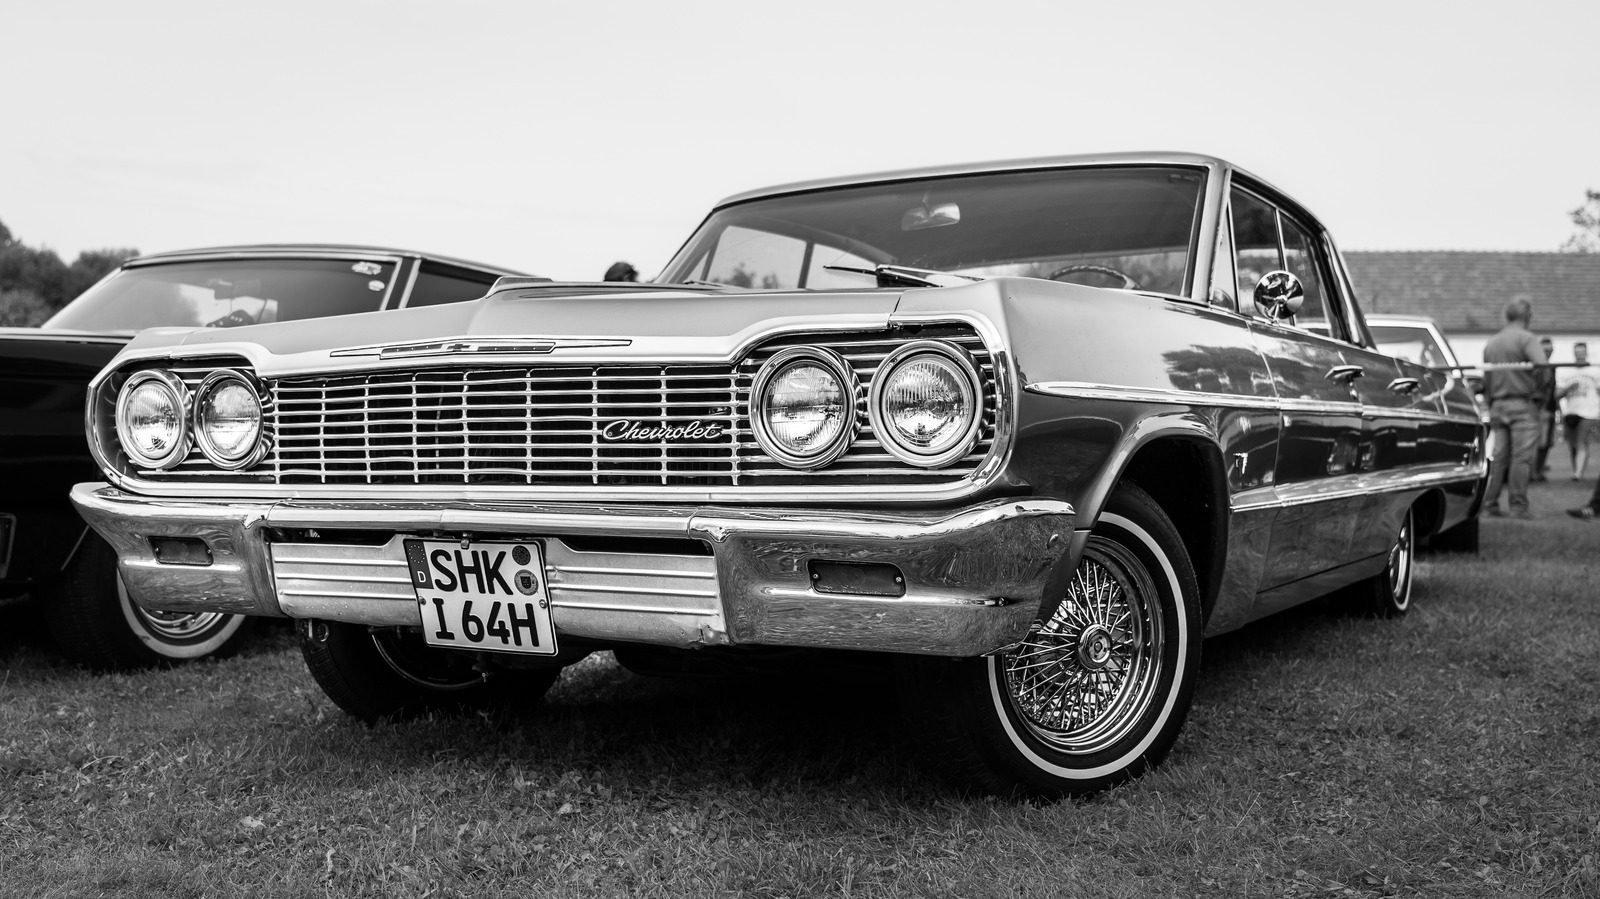 1964 Chevy Impala’nın Aranan Bir Koleksiyon Arabası Olması için 10 Neden